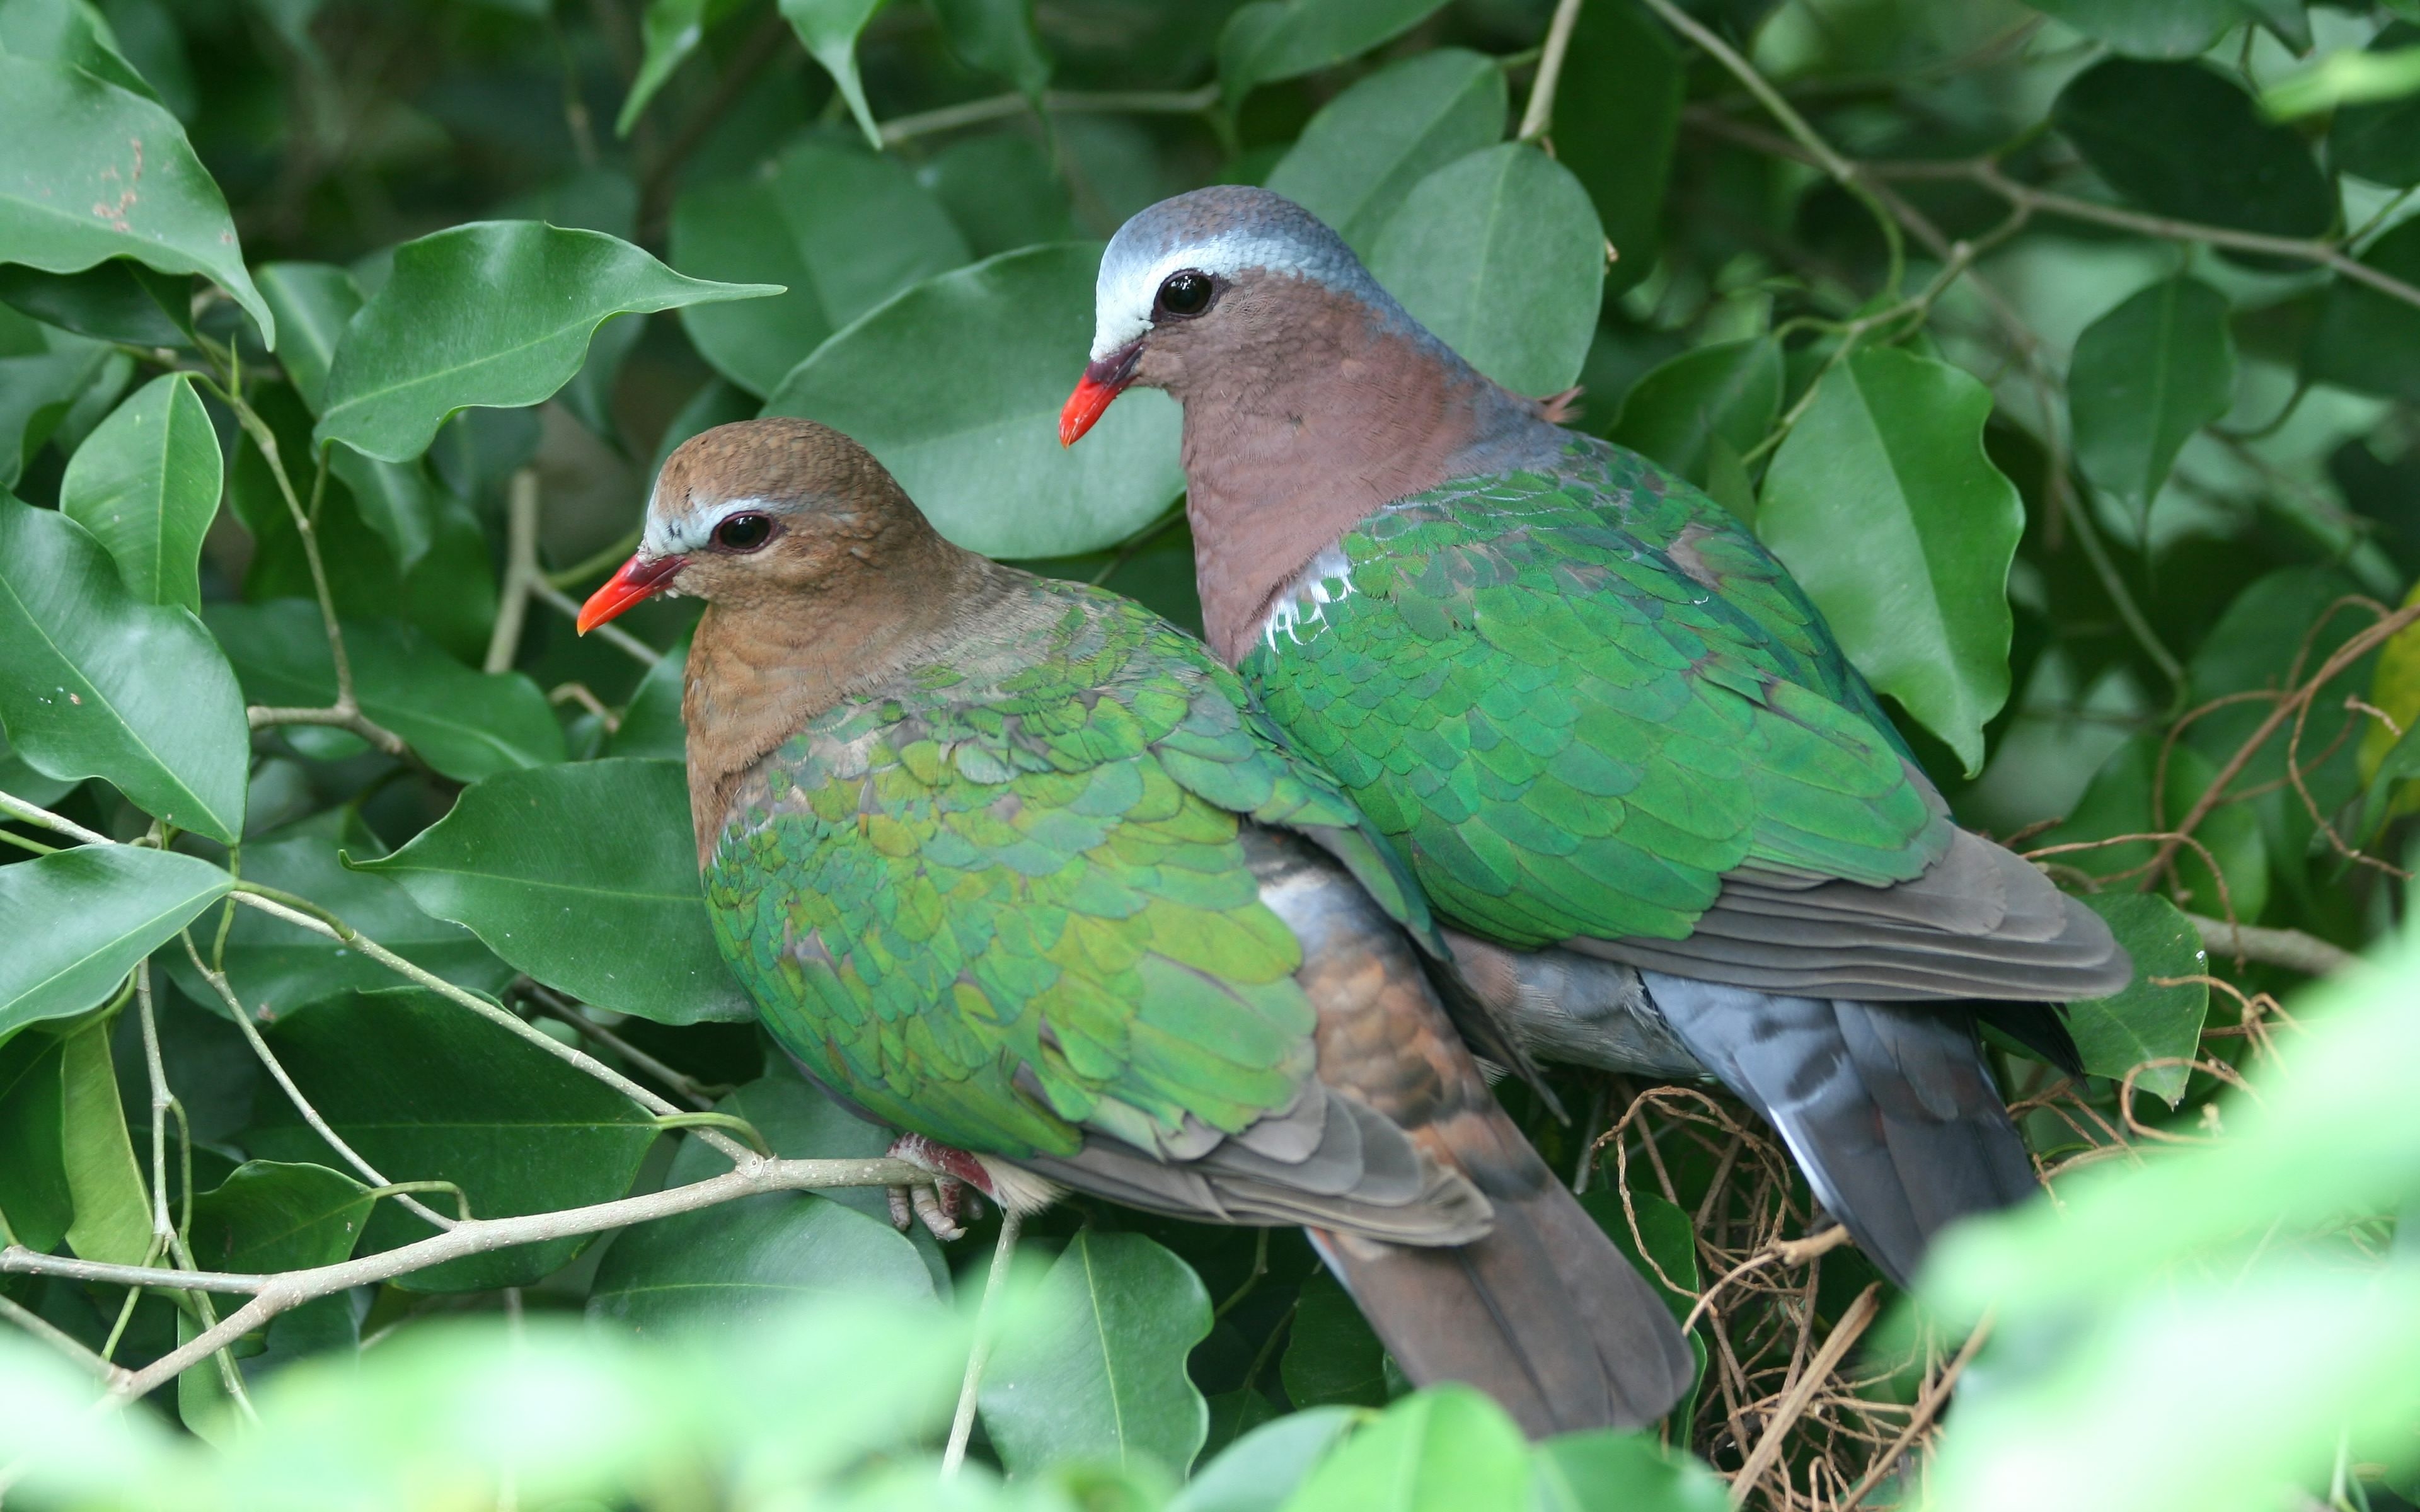 Фото обои птичья пара листья природа - бесплатные картинки на Fonwall